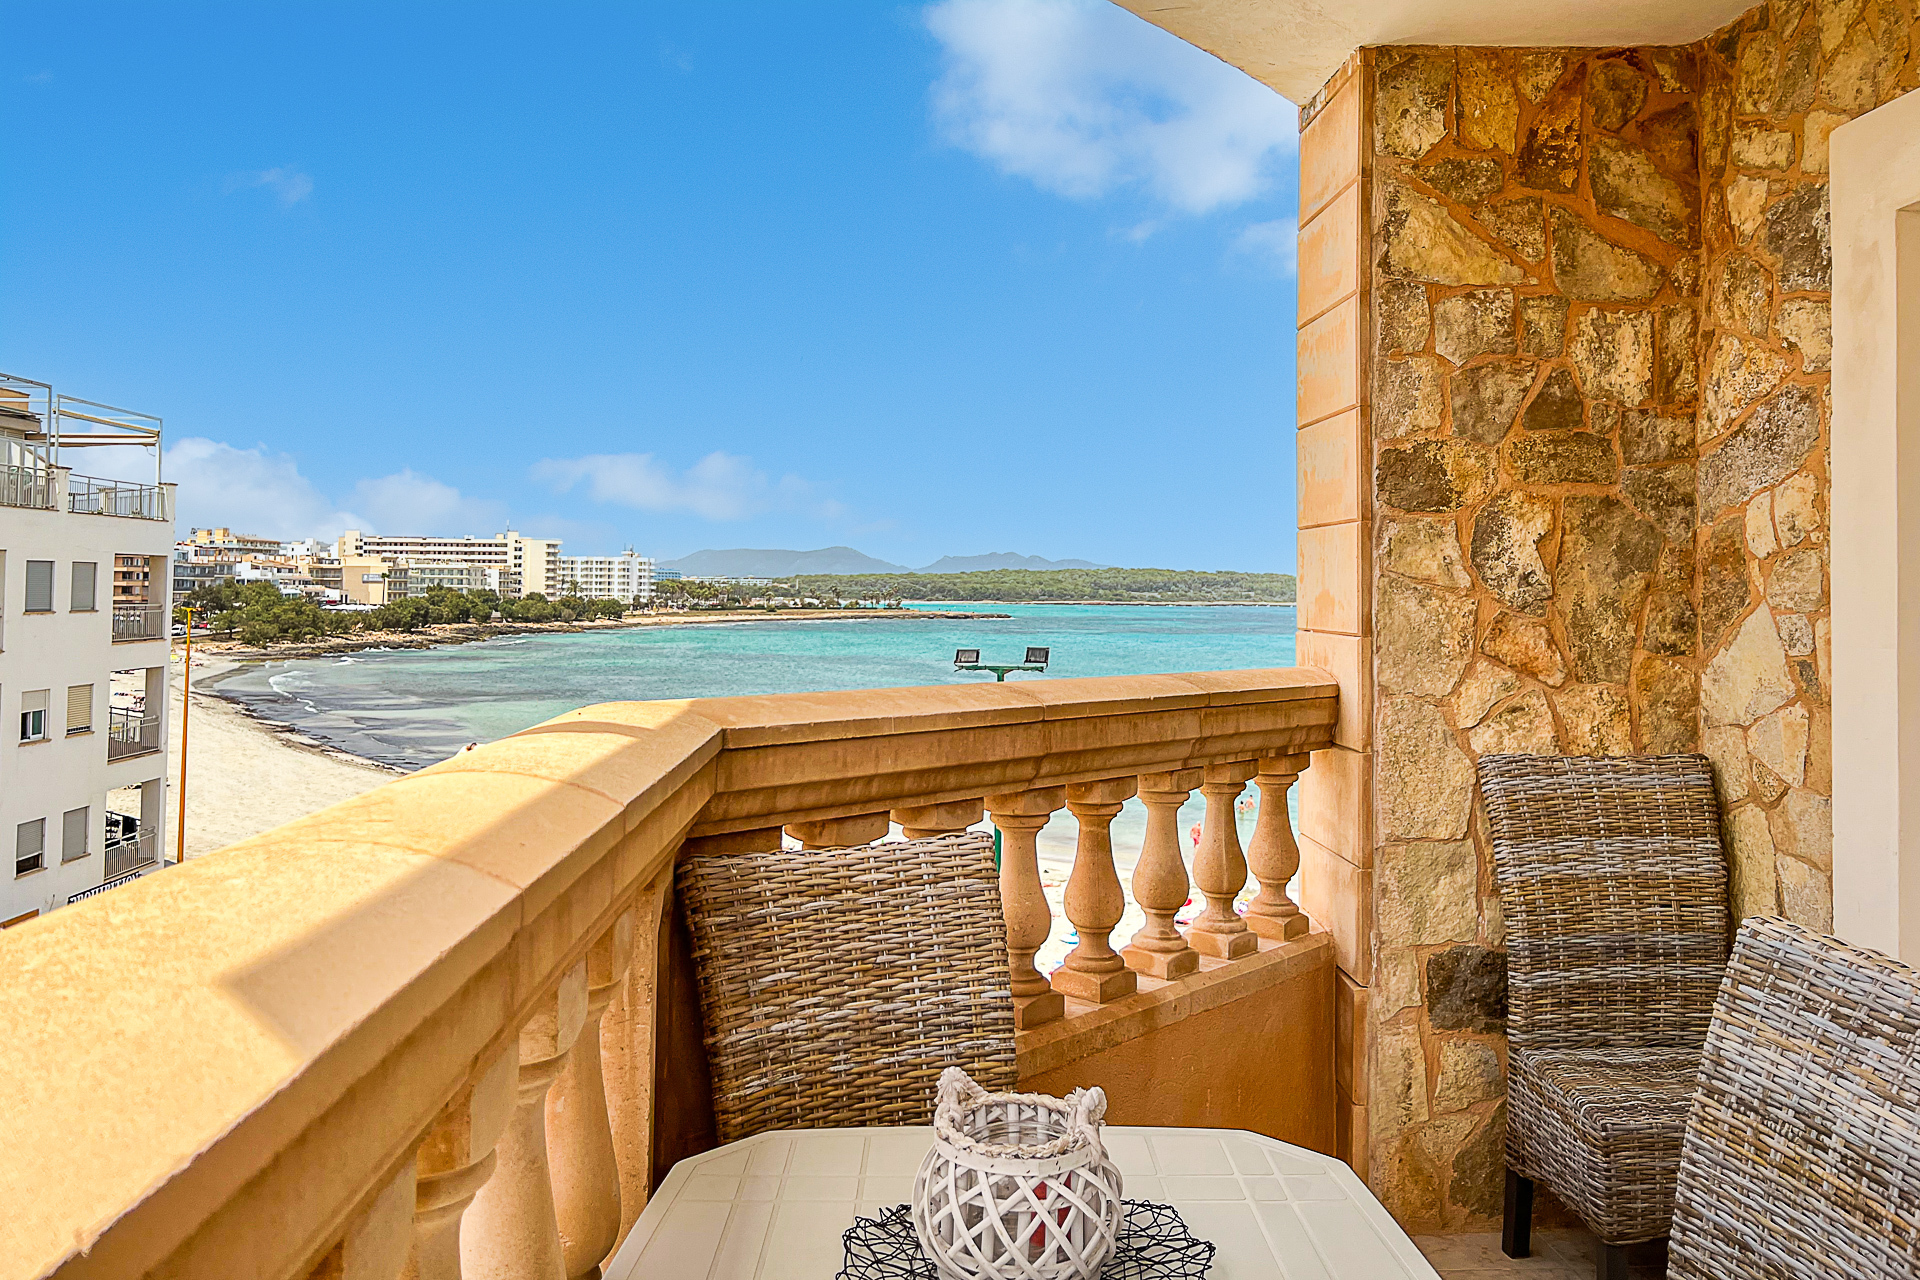 Vivir cerca de la playa con un confort moderno: Apartamento con vistas al mar en S’Illot, 07687 S'Illot (España), Piso en planta